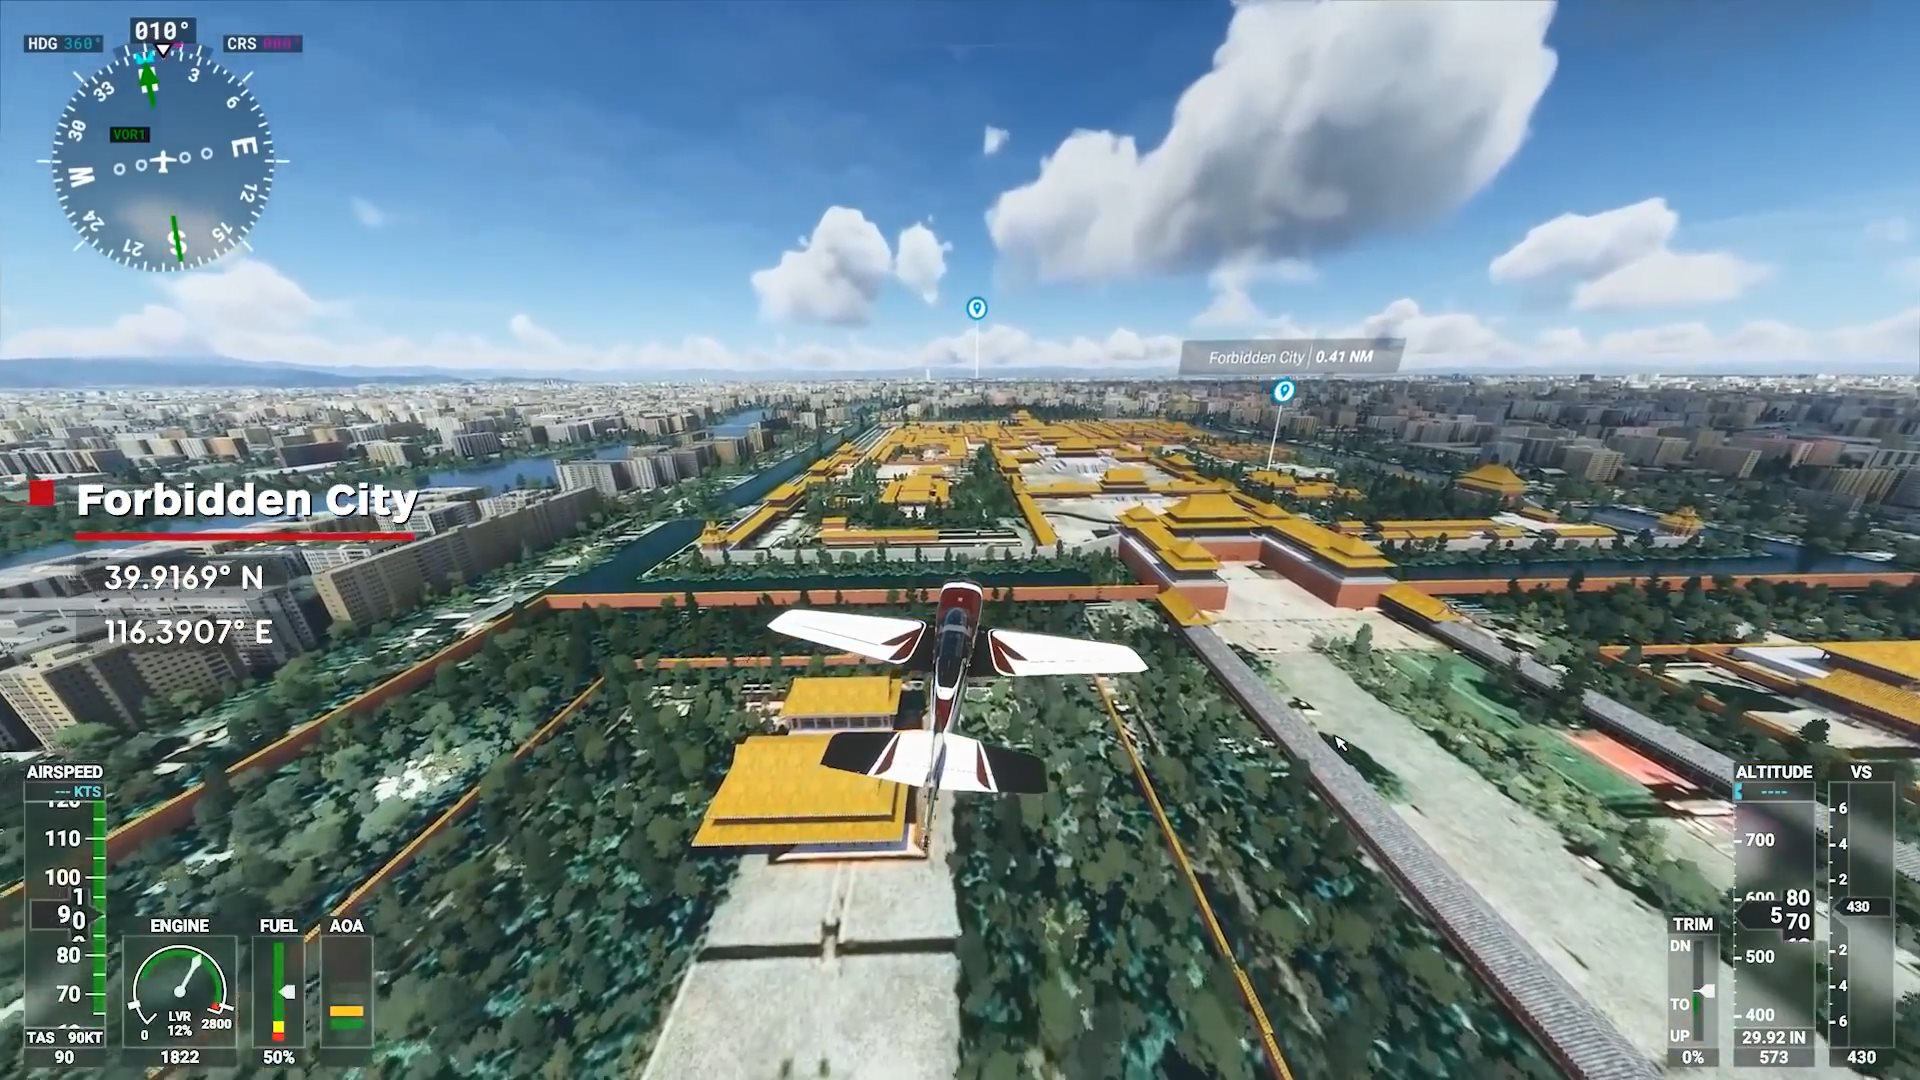 《微軟飛行模擬》實機演示 飽覽全球14個知名地標風景